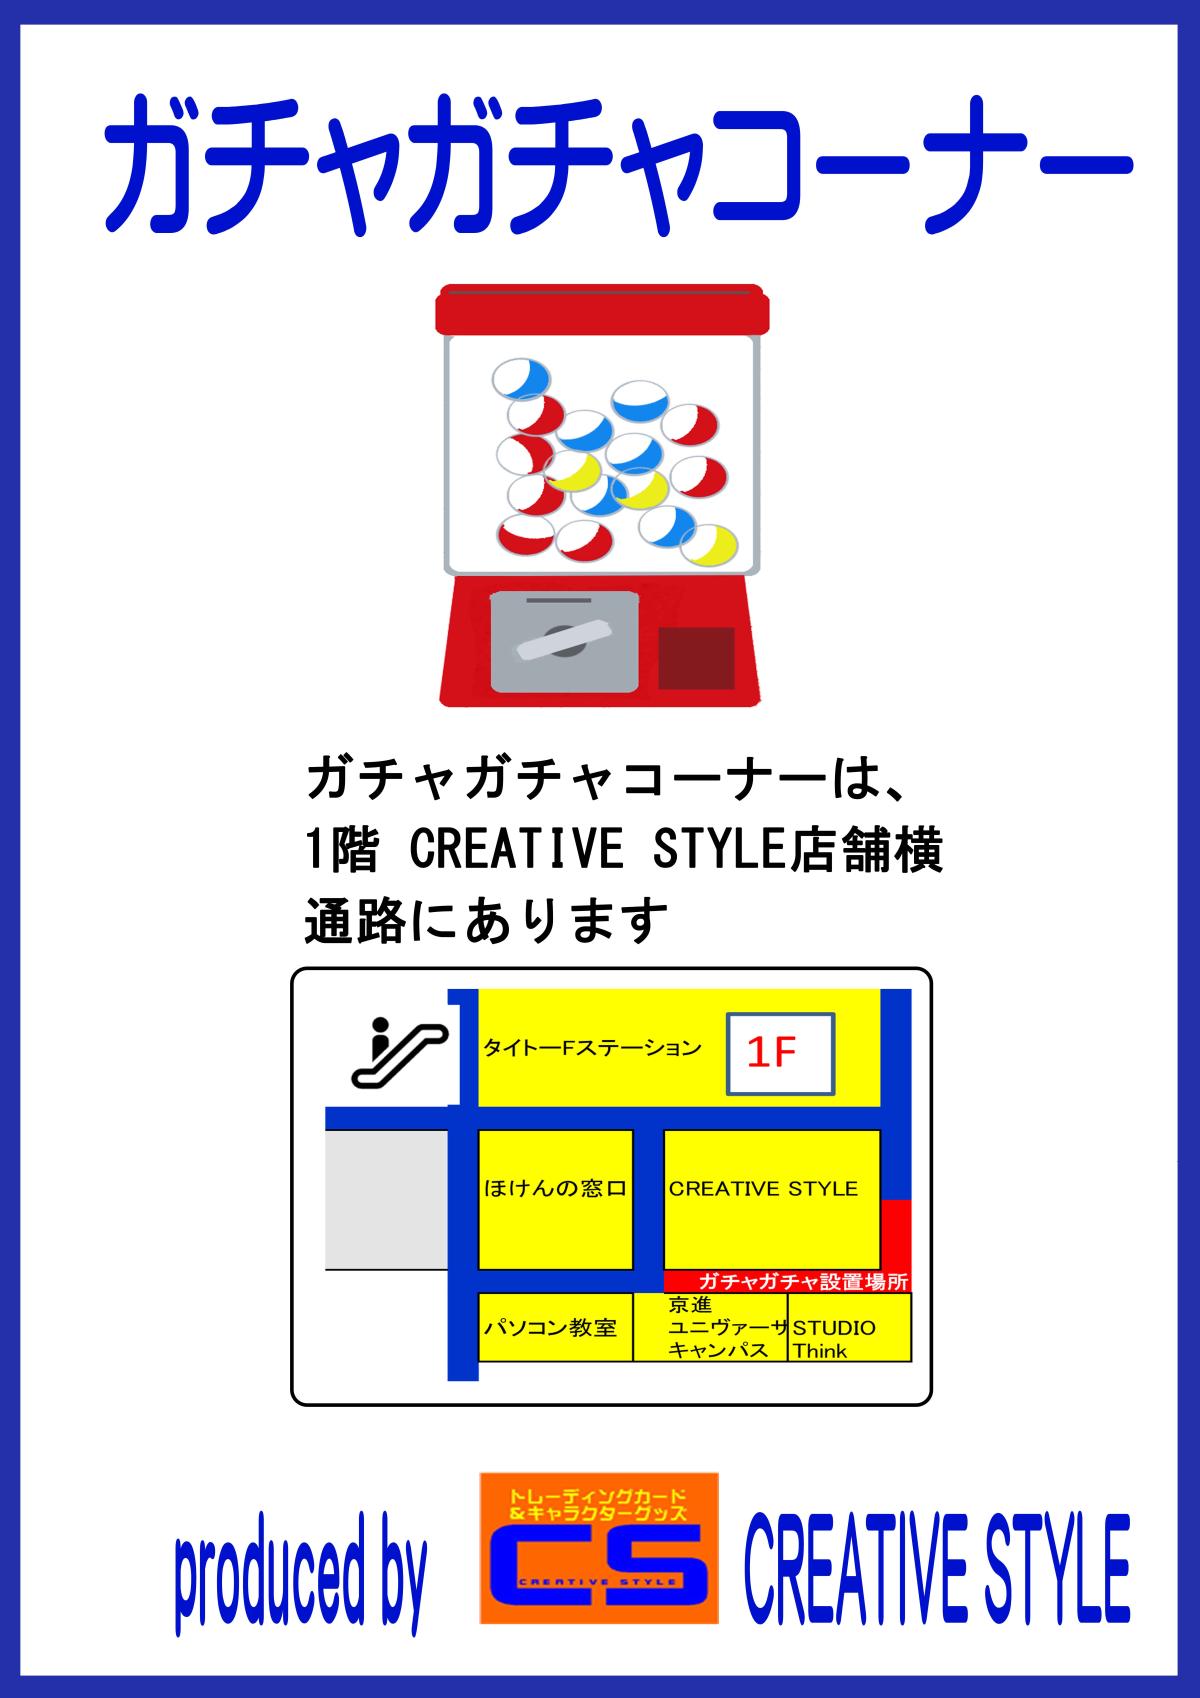 ガチャガチャ CREATIVE STYLE 1F店舗横案内.jpg